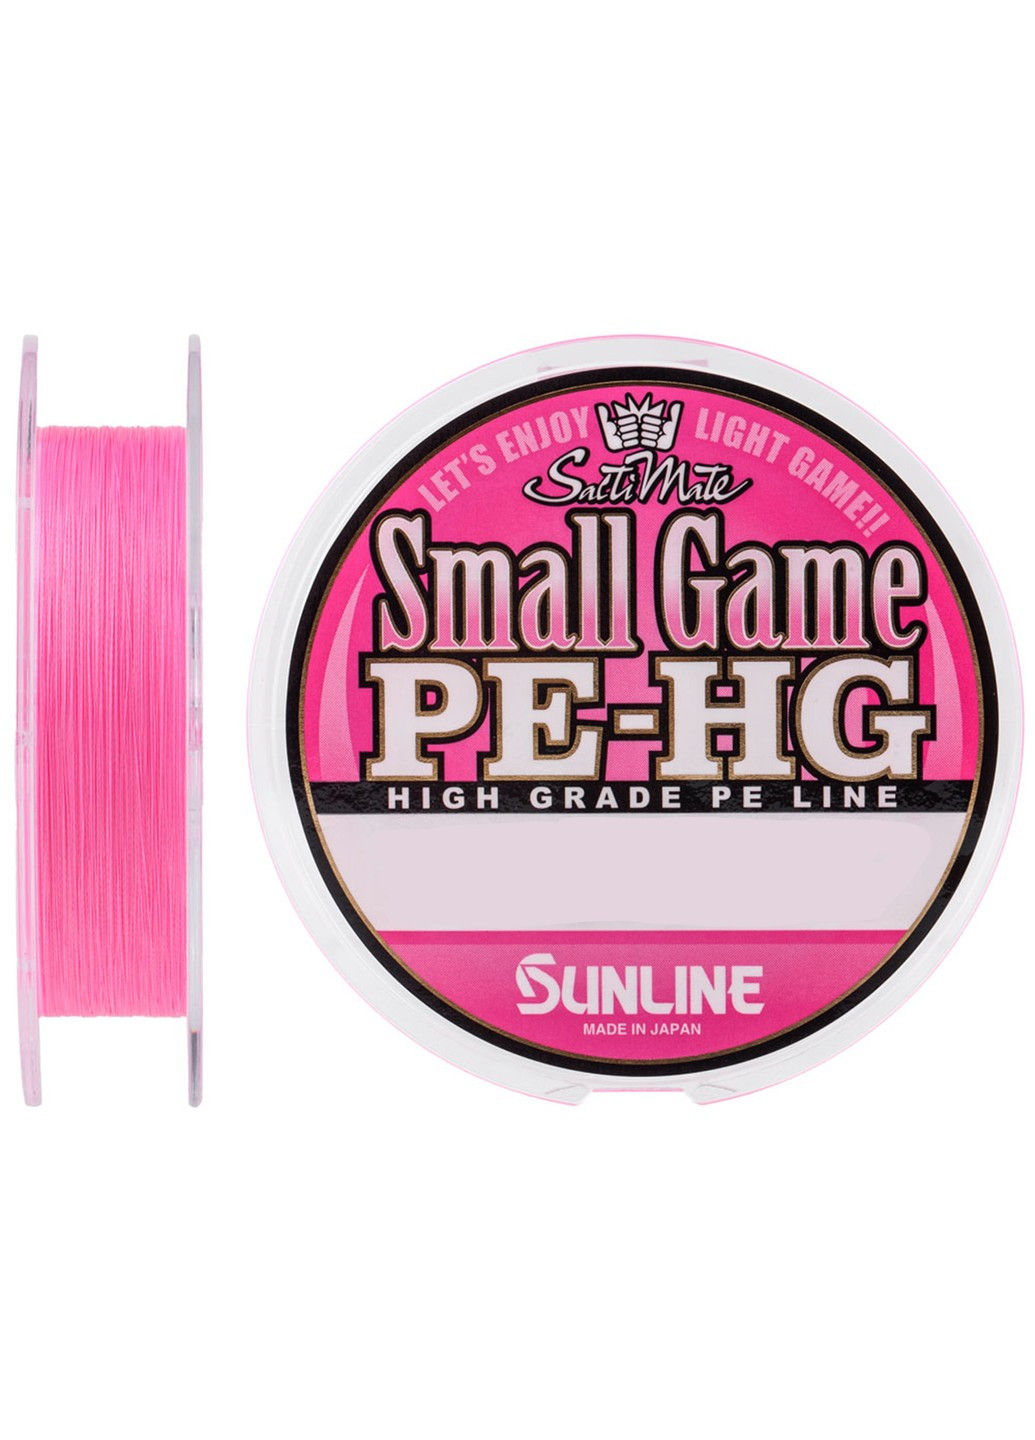 Шнур Small Game PE-HG 150м #0.4 6LB 2.9кг (1658-07-35) Sunline (252468277)